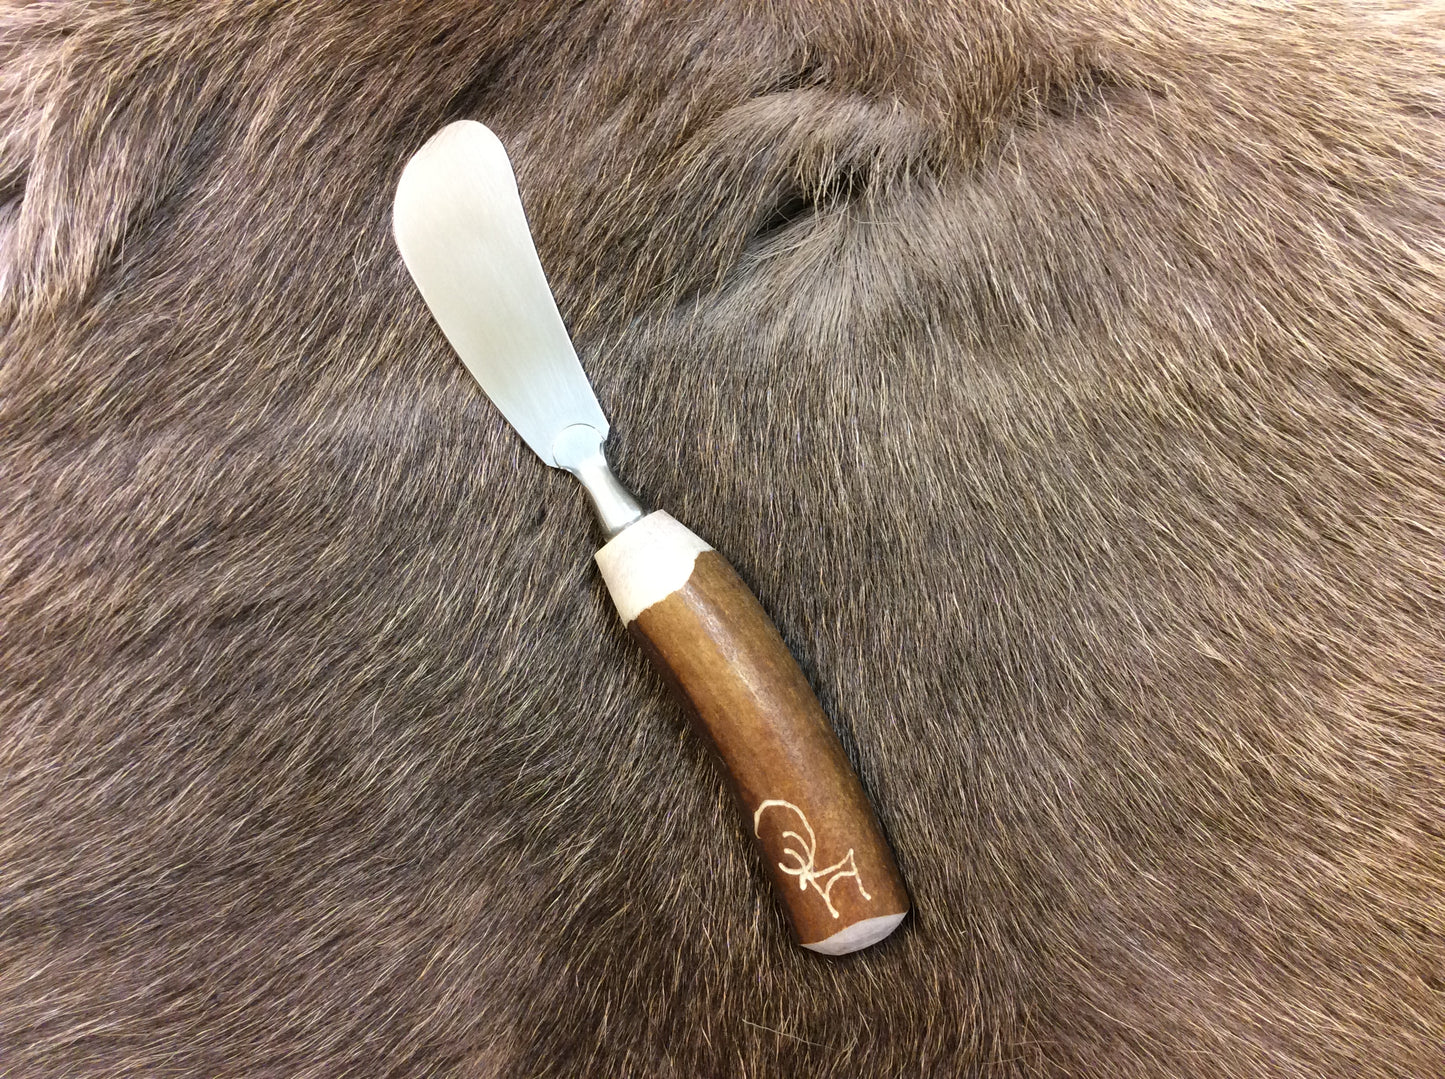 Butter Knife (reindeer antler)